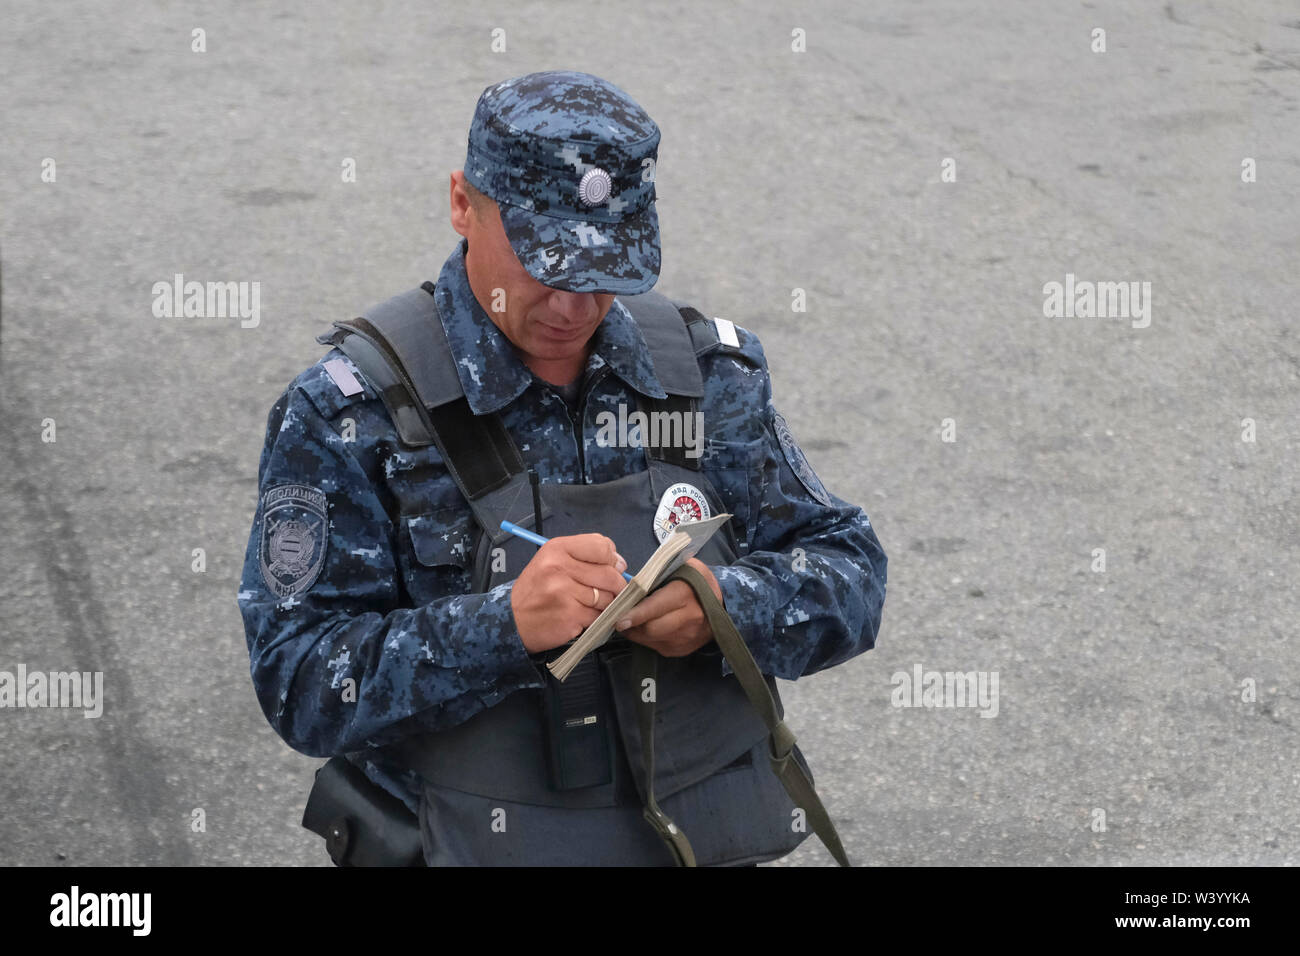 Un agent de police portant des flack jacket écrit le numéro de la plaque d'une voiture à un poste de contrôle de la frontière entre la République d'Ingouchie et de la République d'Ossétie du Nord dans le District fédéral du Caucase du Nord de la Russie Banque D'Images